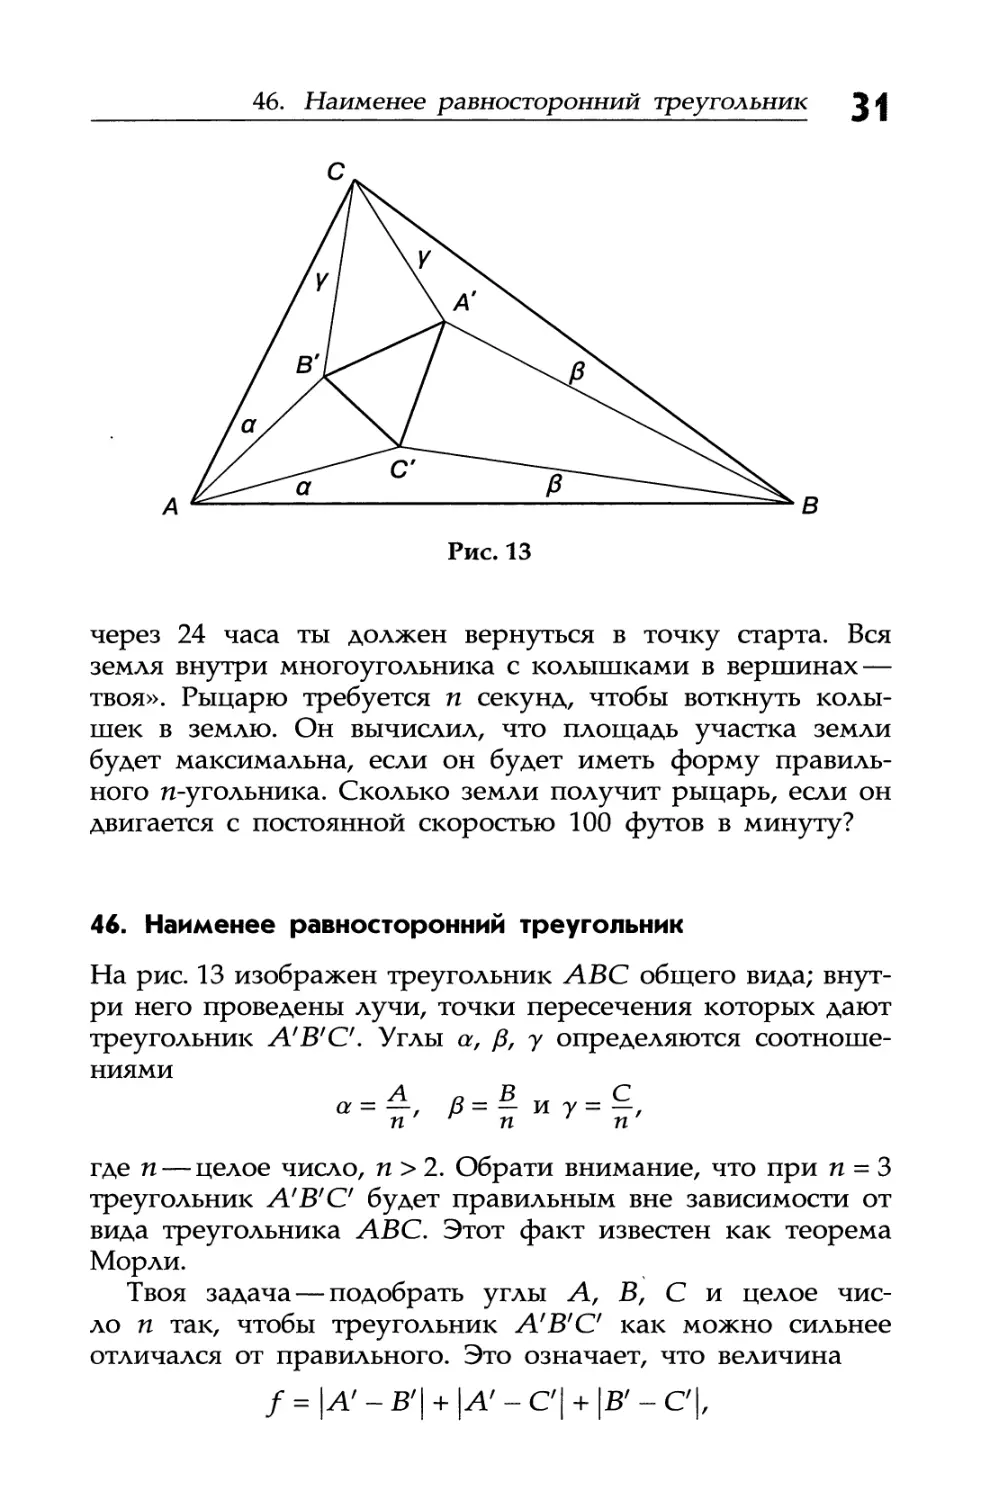 46. Наименее равносторонний треугольник